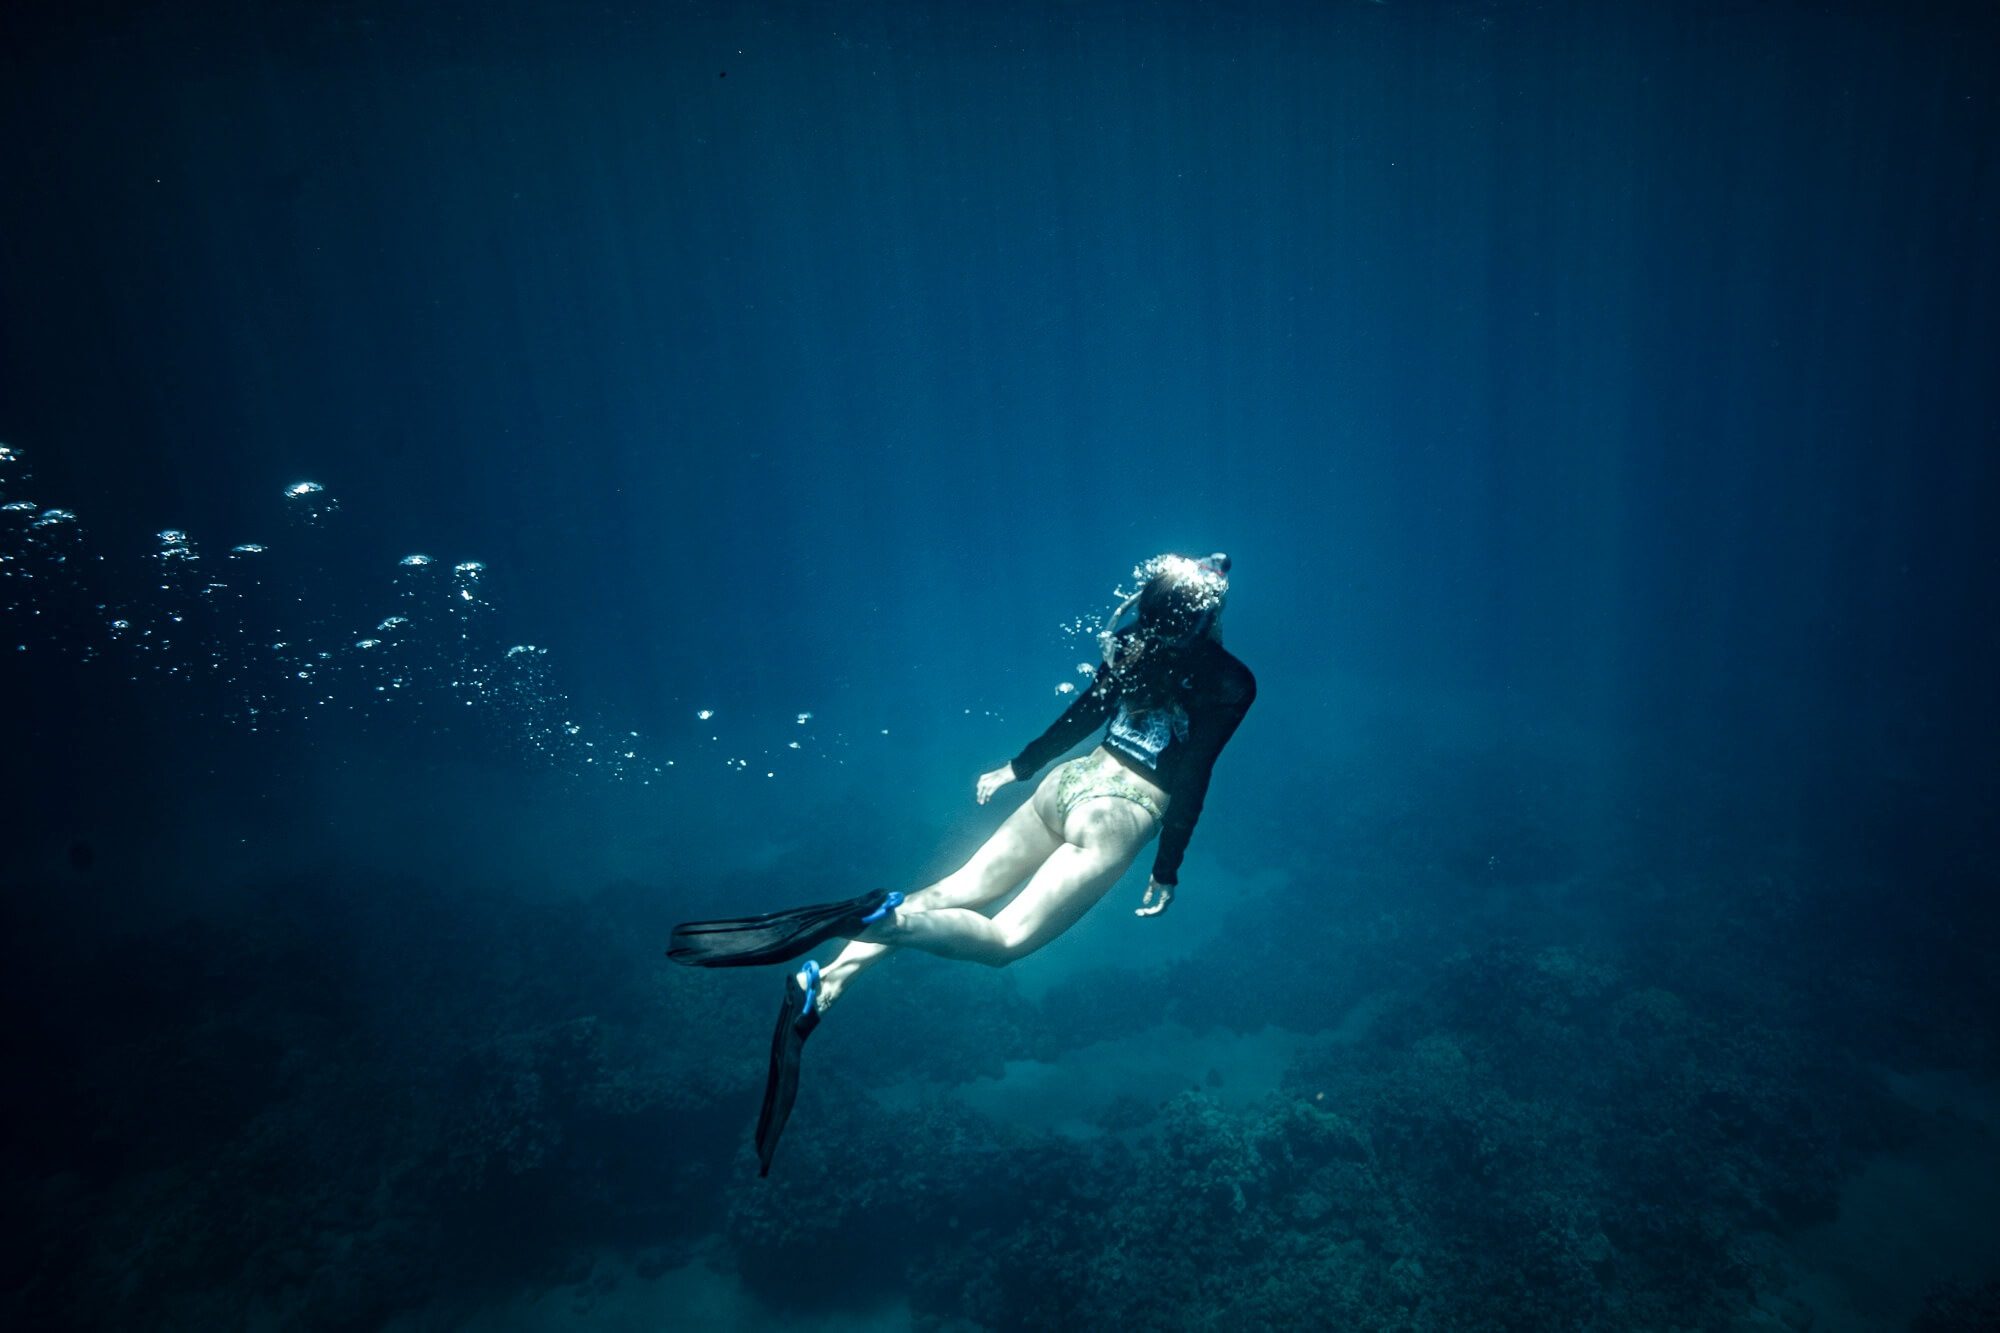 Carly Wallace snorkeling in the waters near Big Island, Hawaii shot by Jake Landon Schwartz | photo by jake landon schwartz